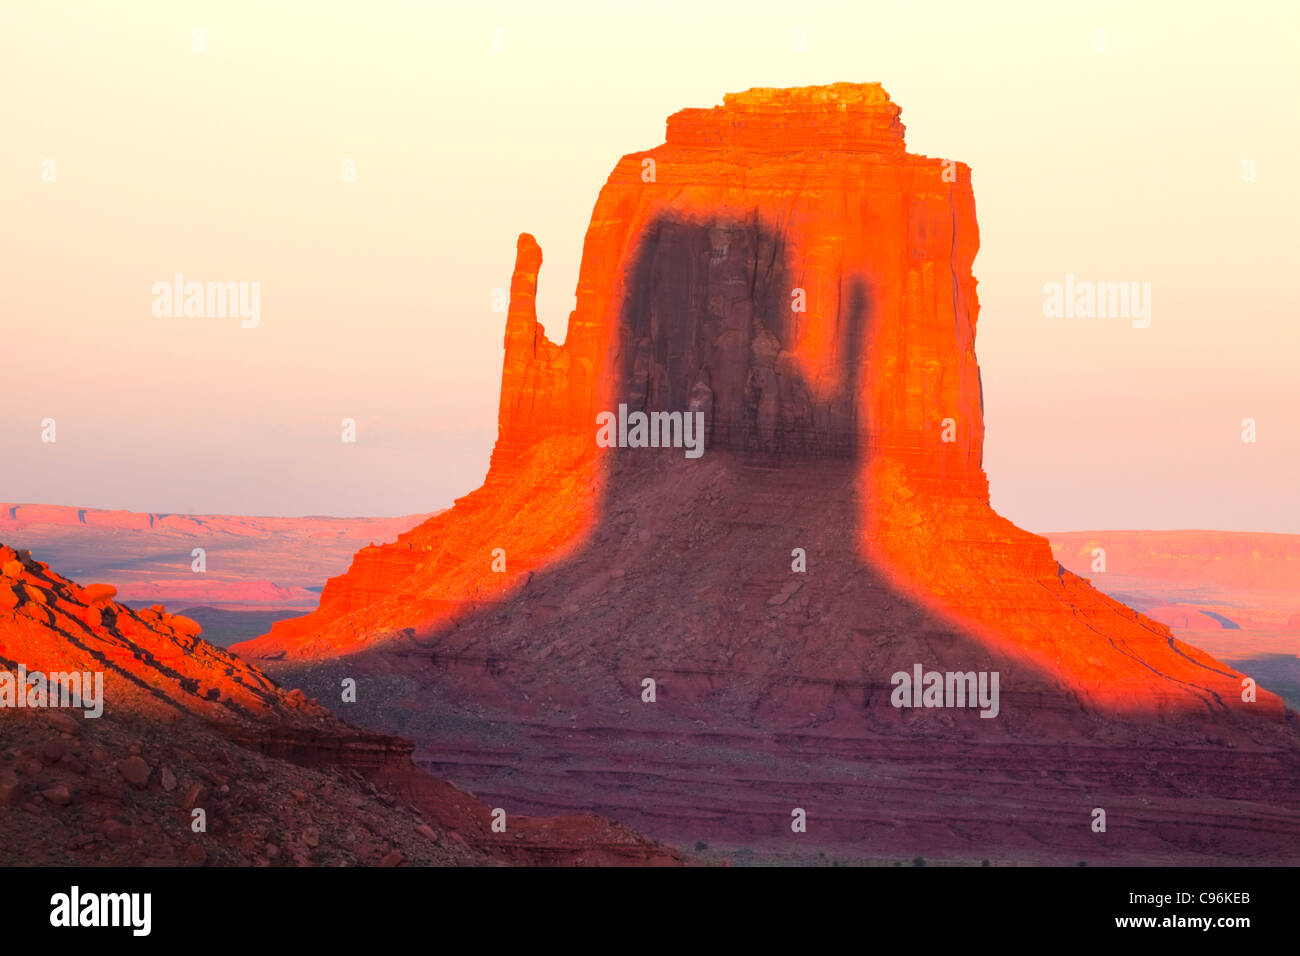 Ost-Handschuh bei Sonnenuntergang, Monument Valley Tribal Park, Arizona/Utah Schatten von West Mitten im Osten Fäustling Navajo-Reservat Stockfoto